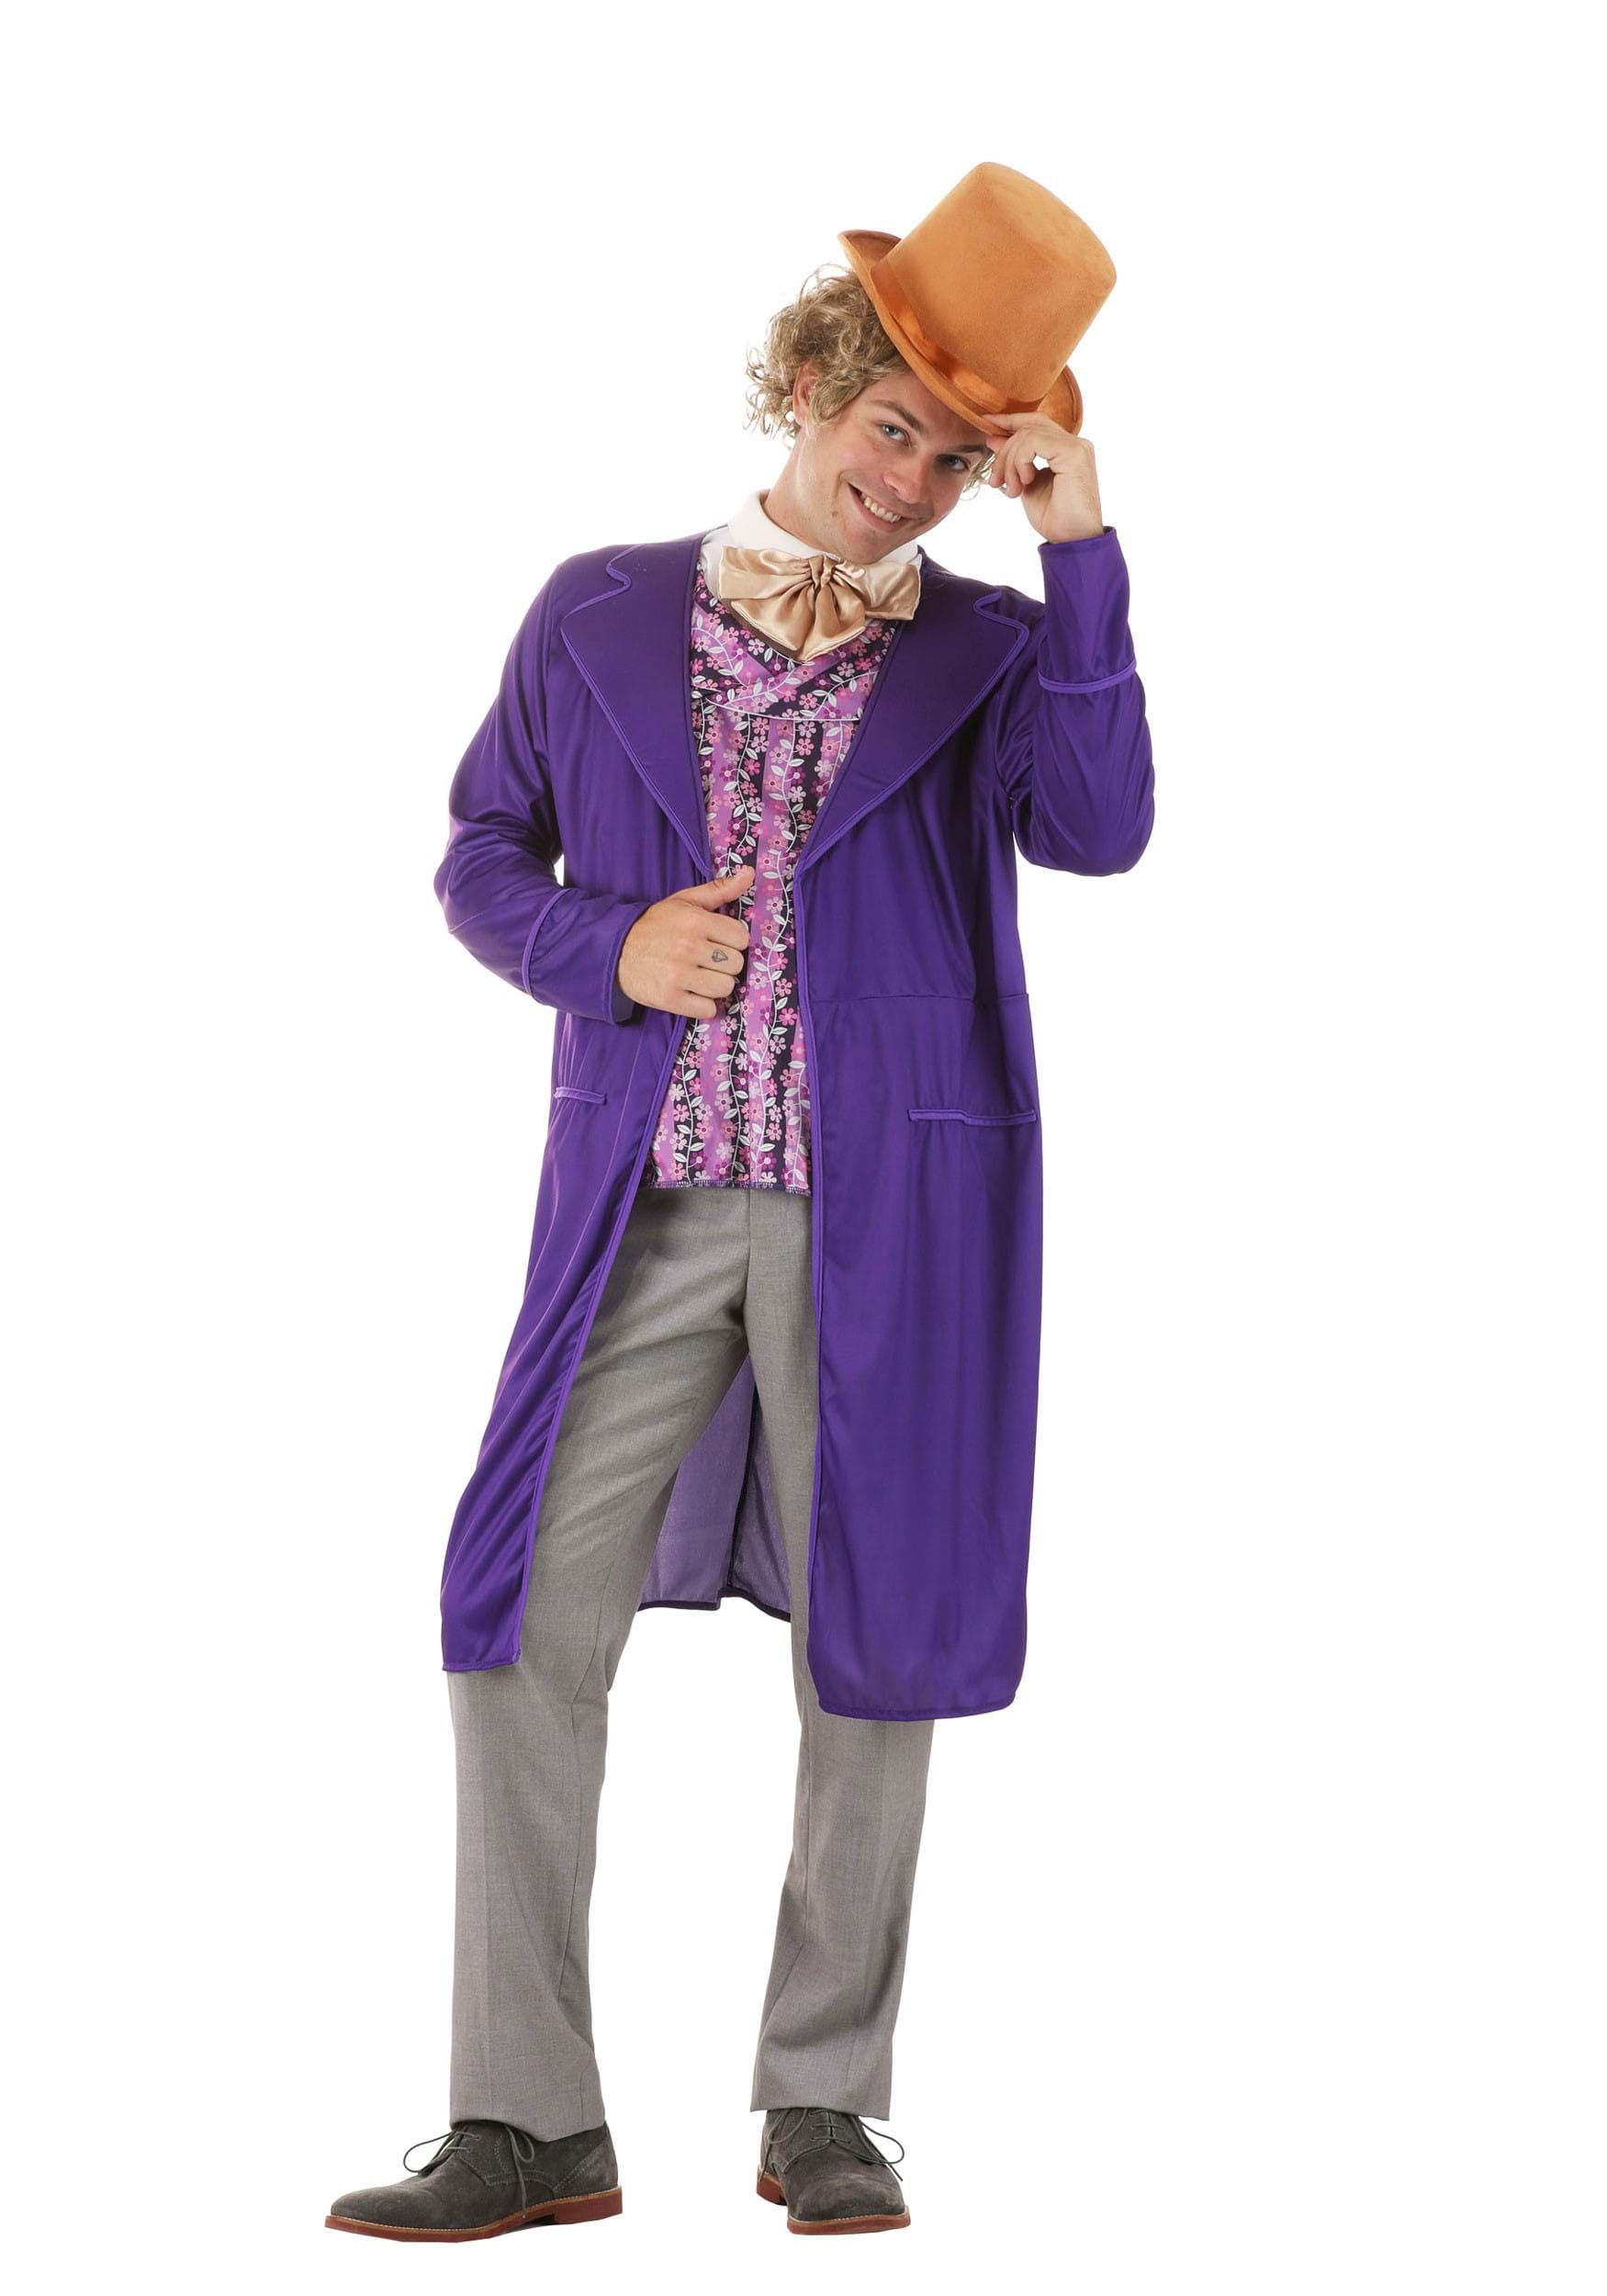 Men's Willy Wonka Costume